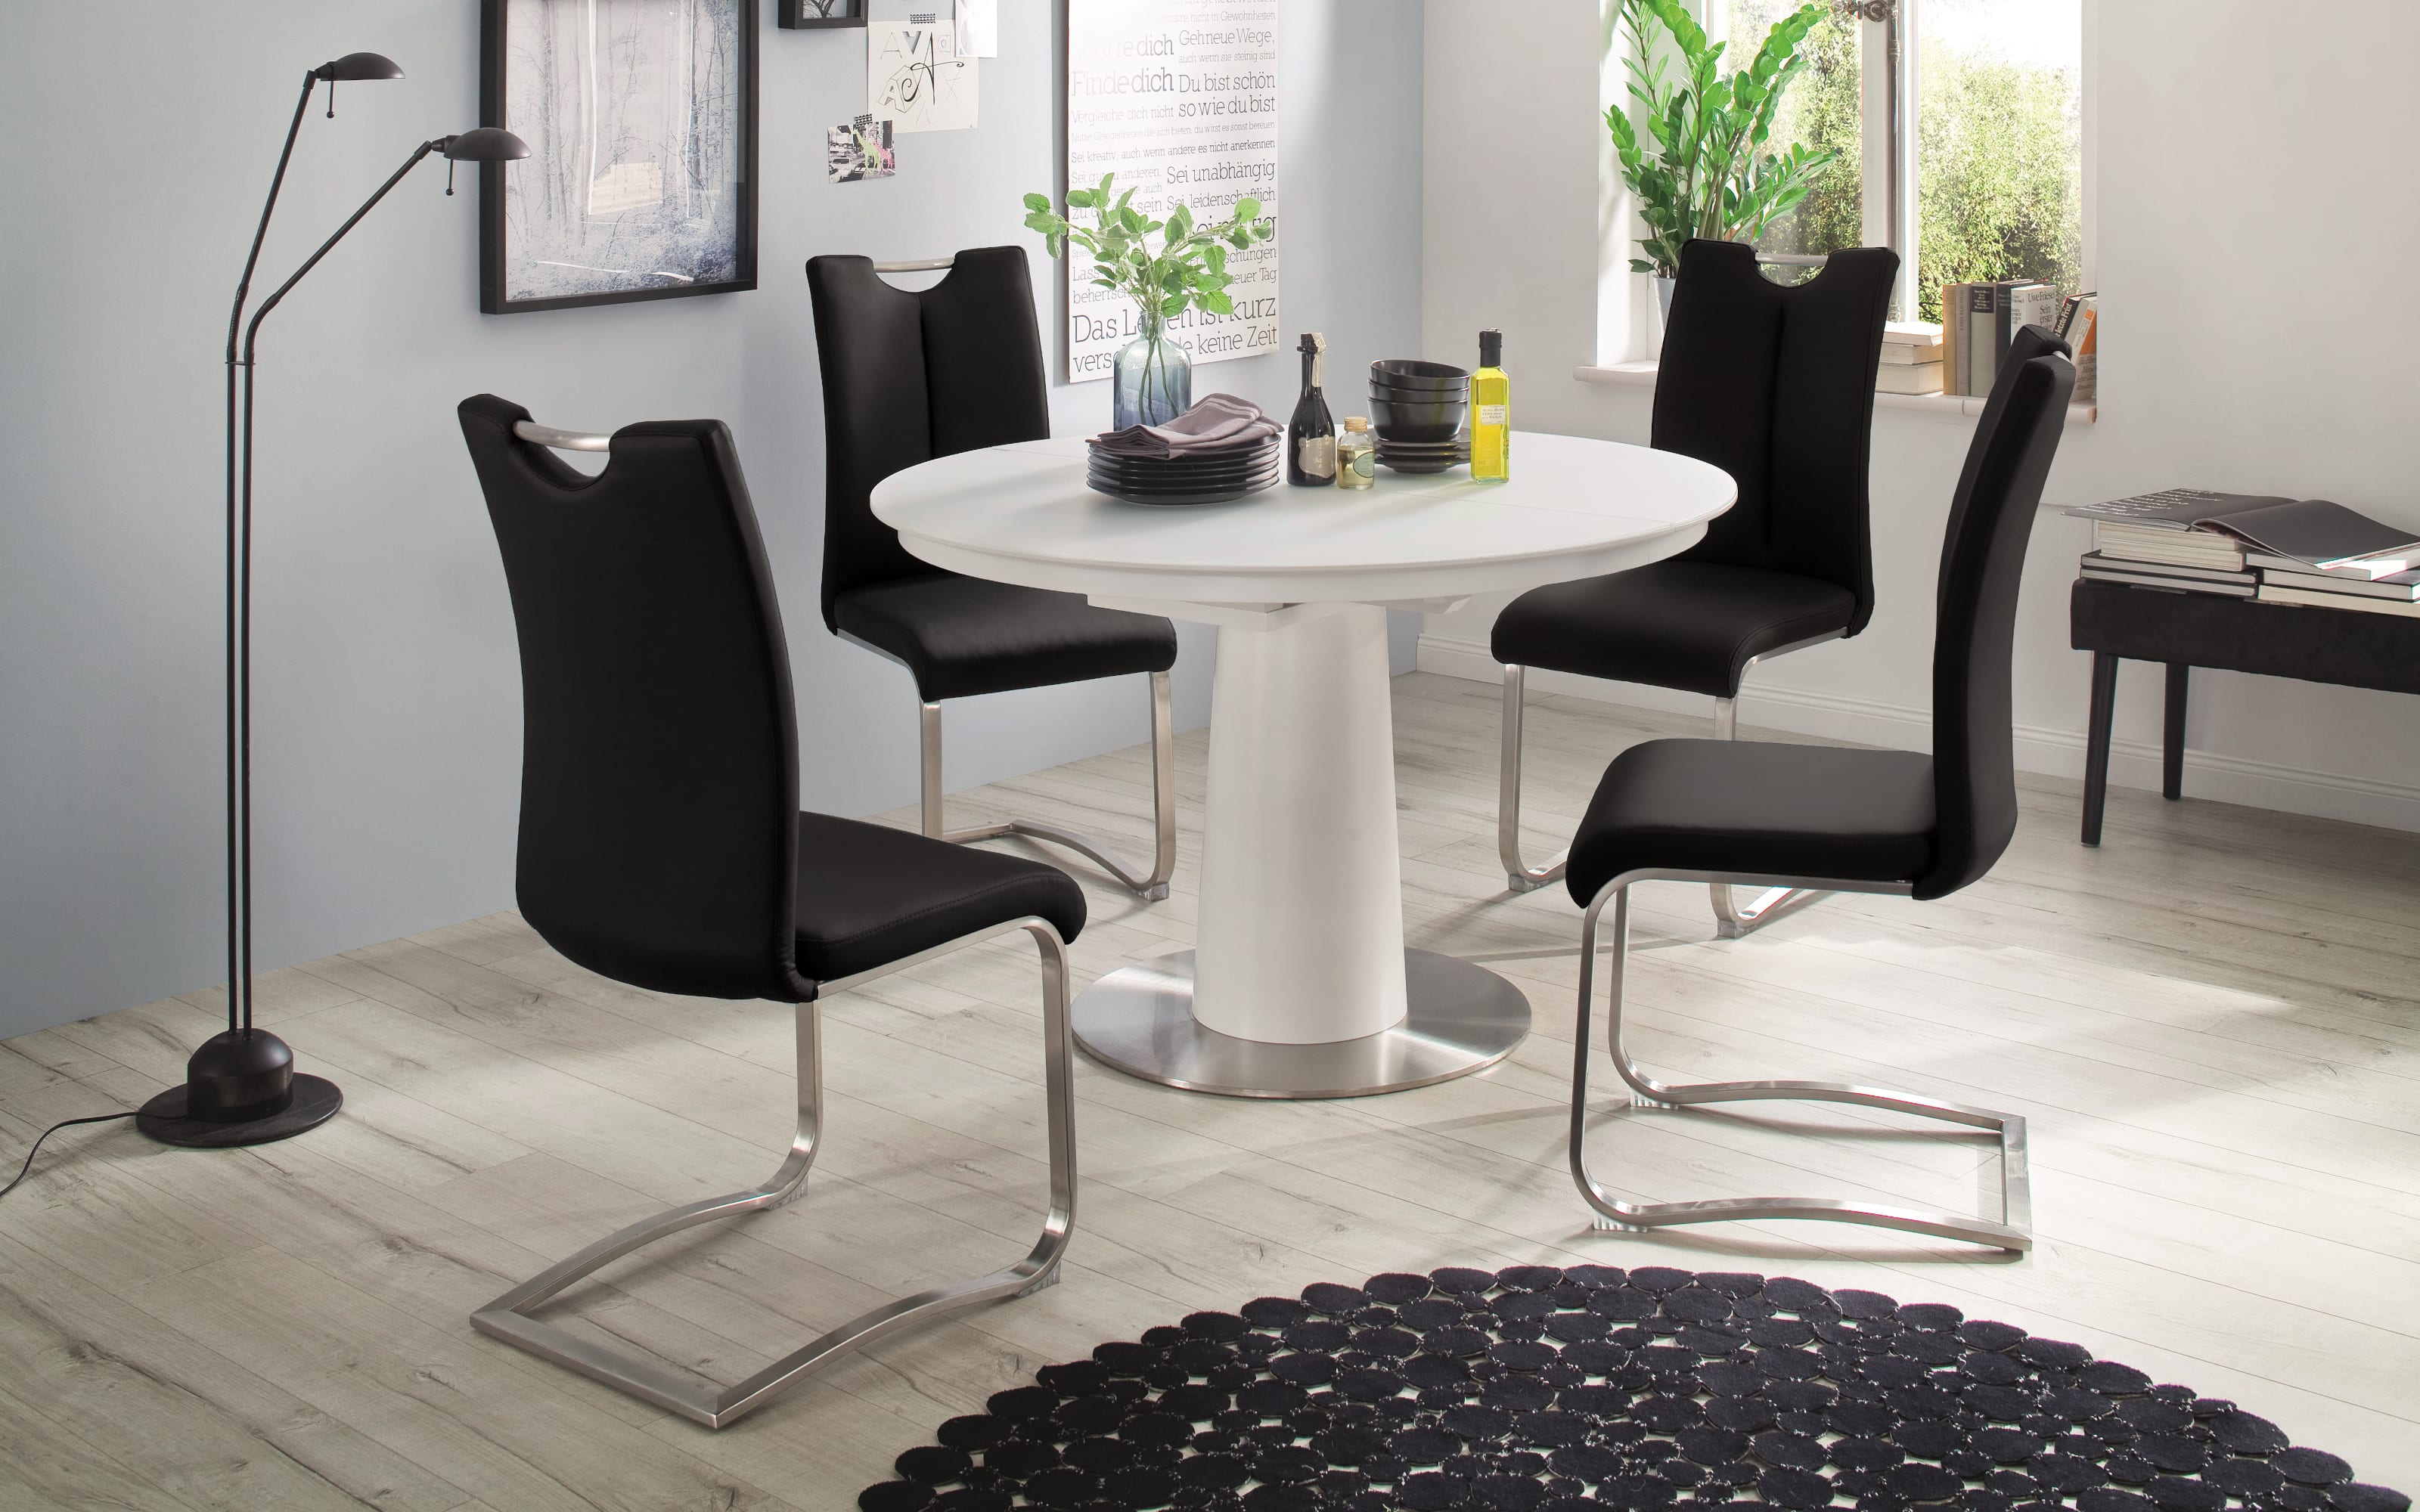 Stuhlgruppe Artos 2 / Waris in schwarz / weiß, mit Tischplatte aus Glas